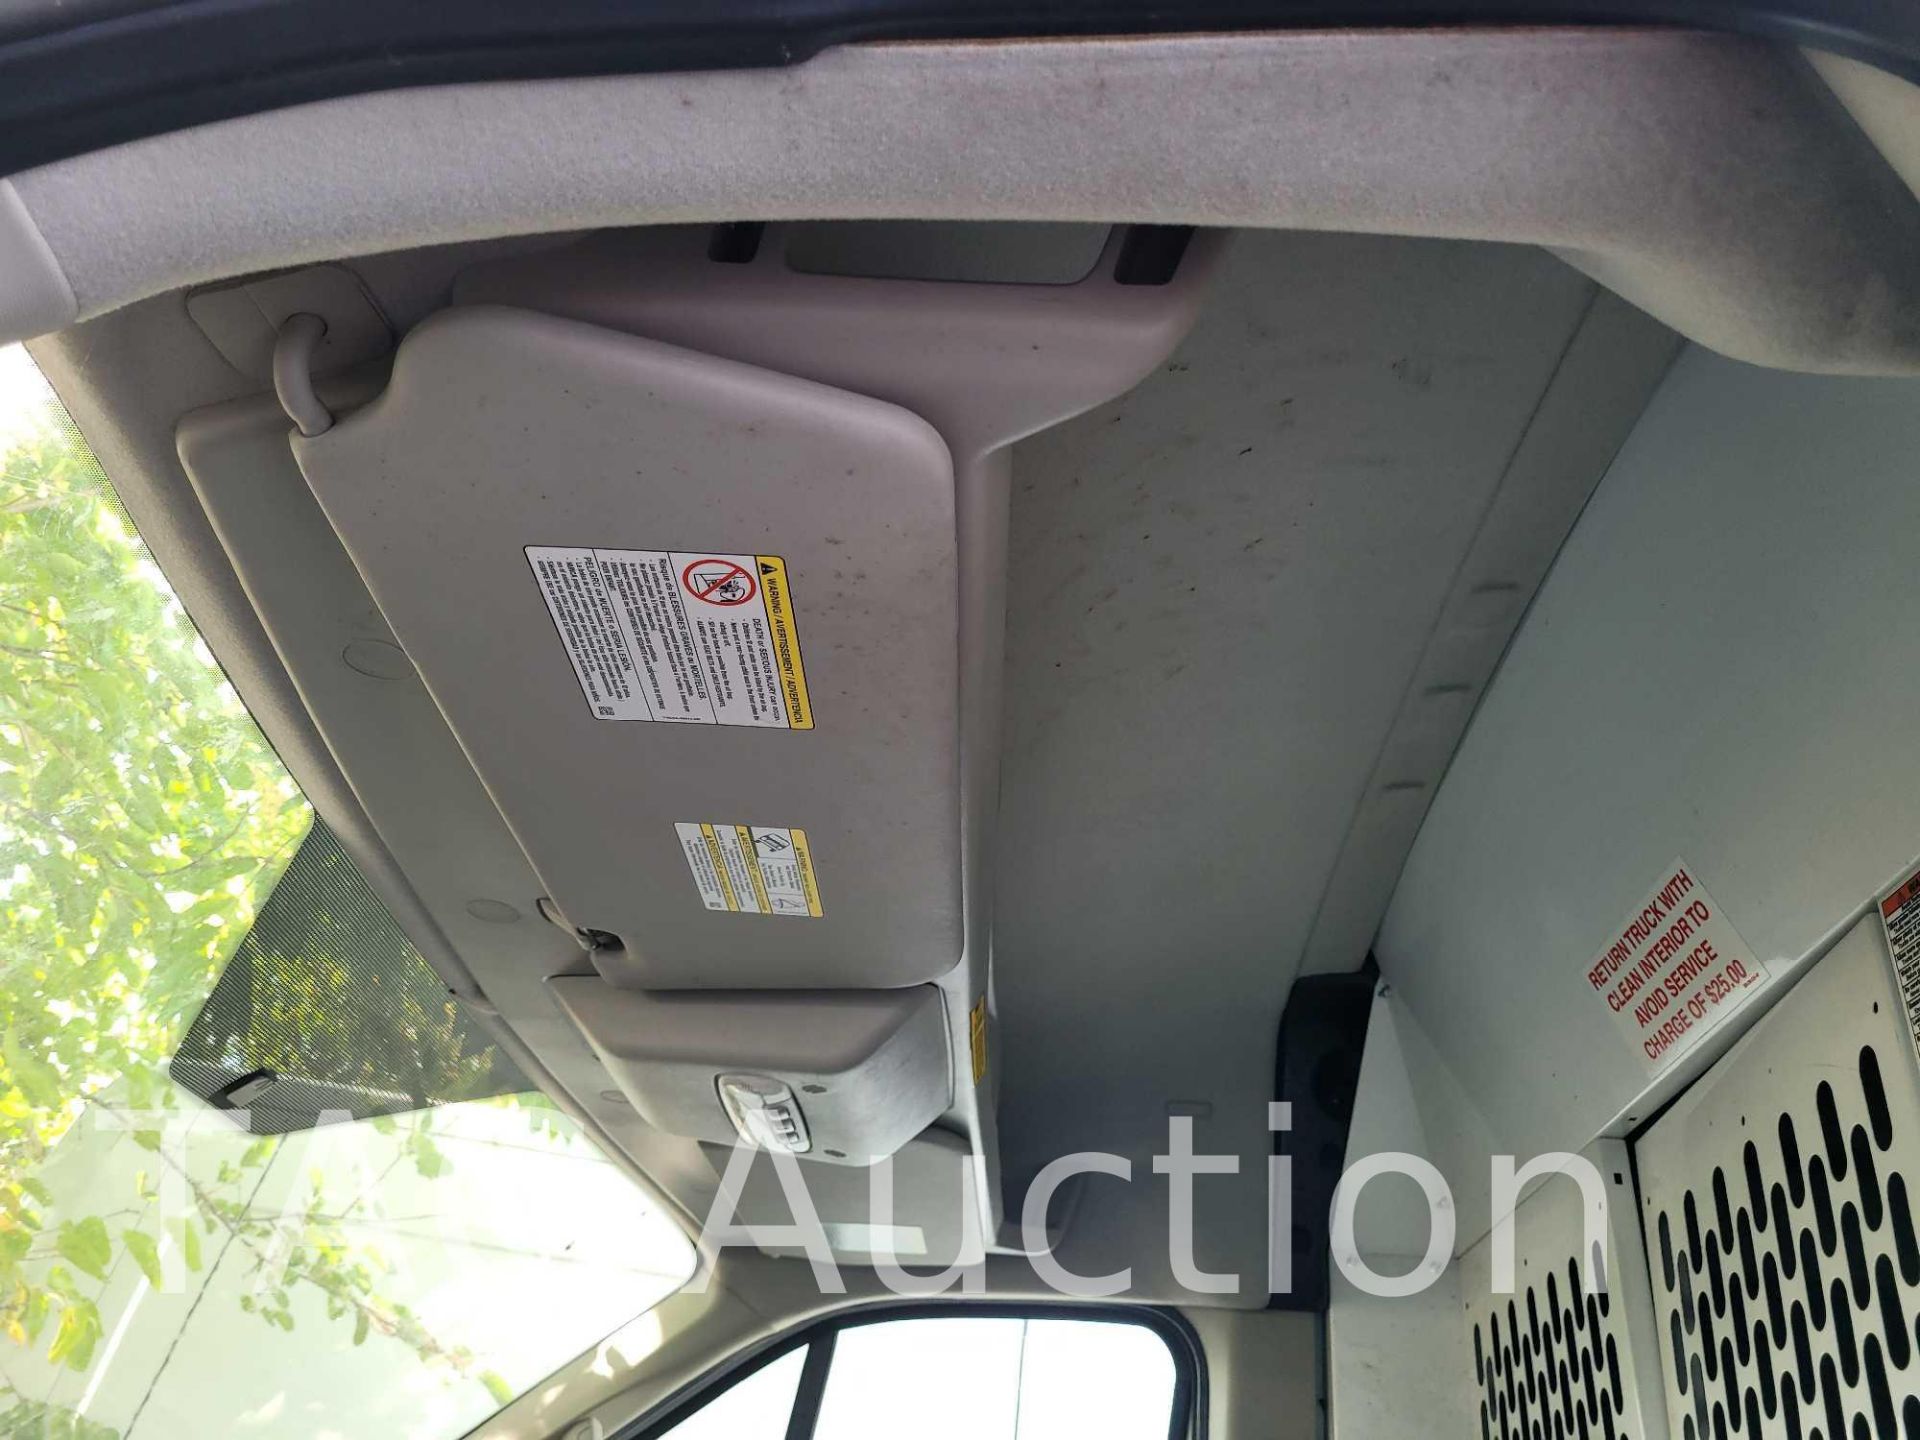 2019 Ford Transit 150 Cargo Van - Image 15 of 41